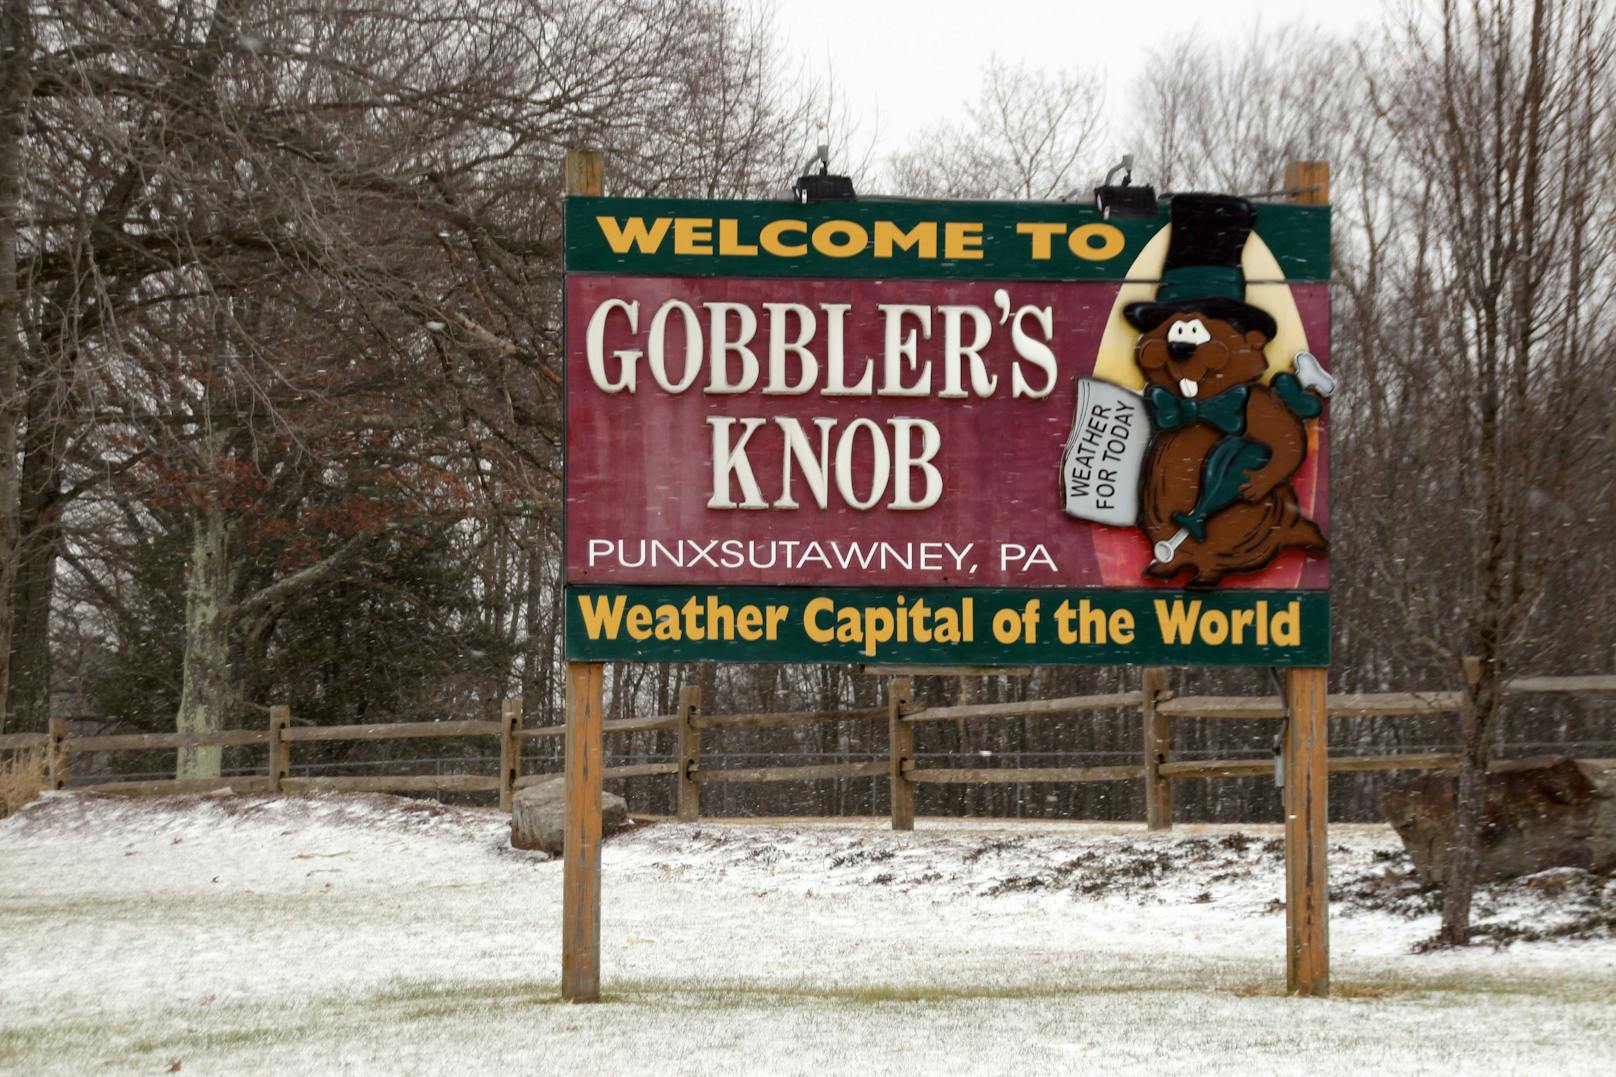 Die Feierlichkeiten am "Gobblers Knob" finden seit 1887 statt. 